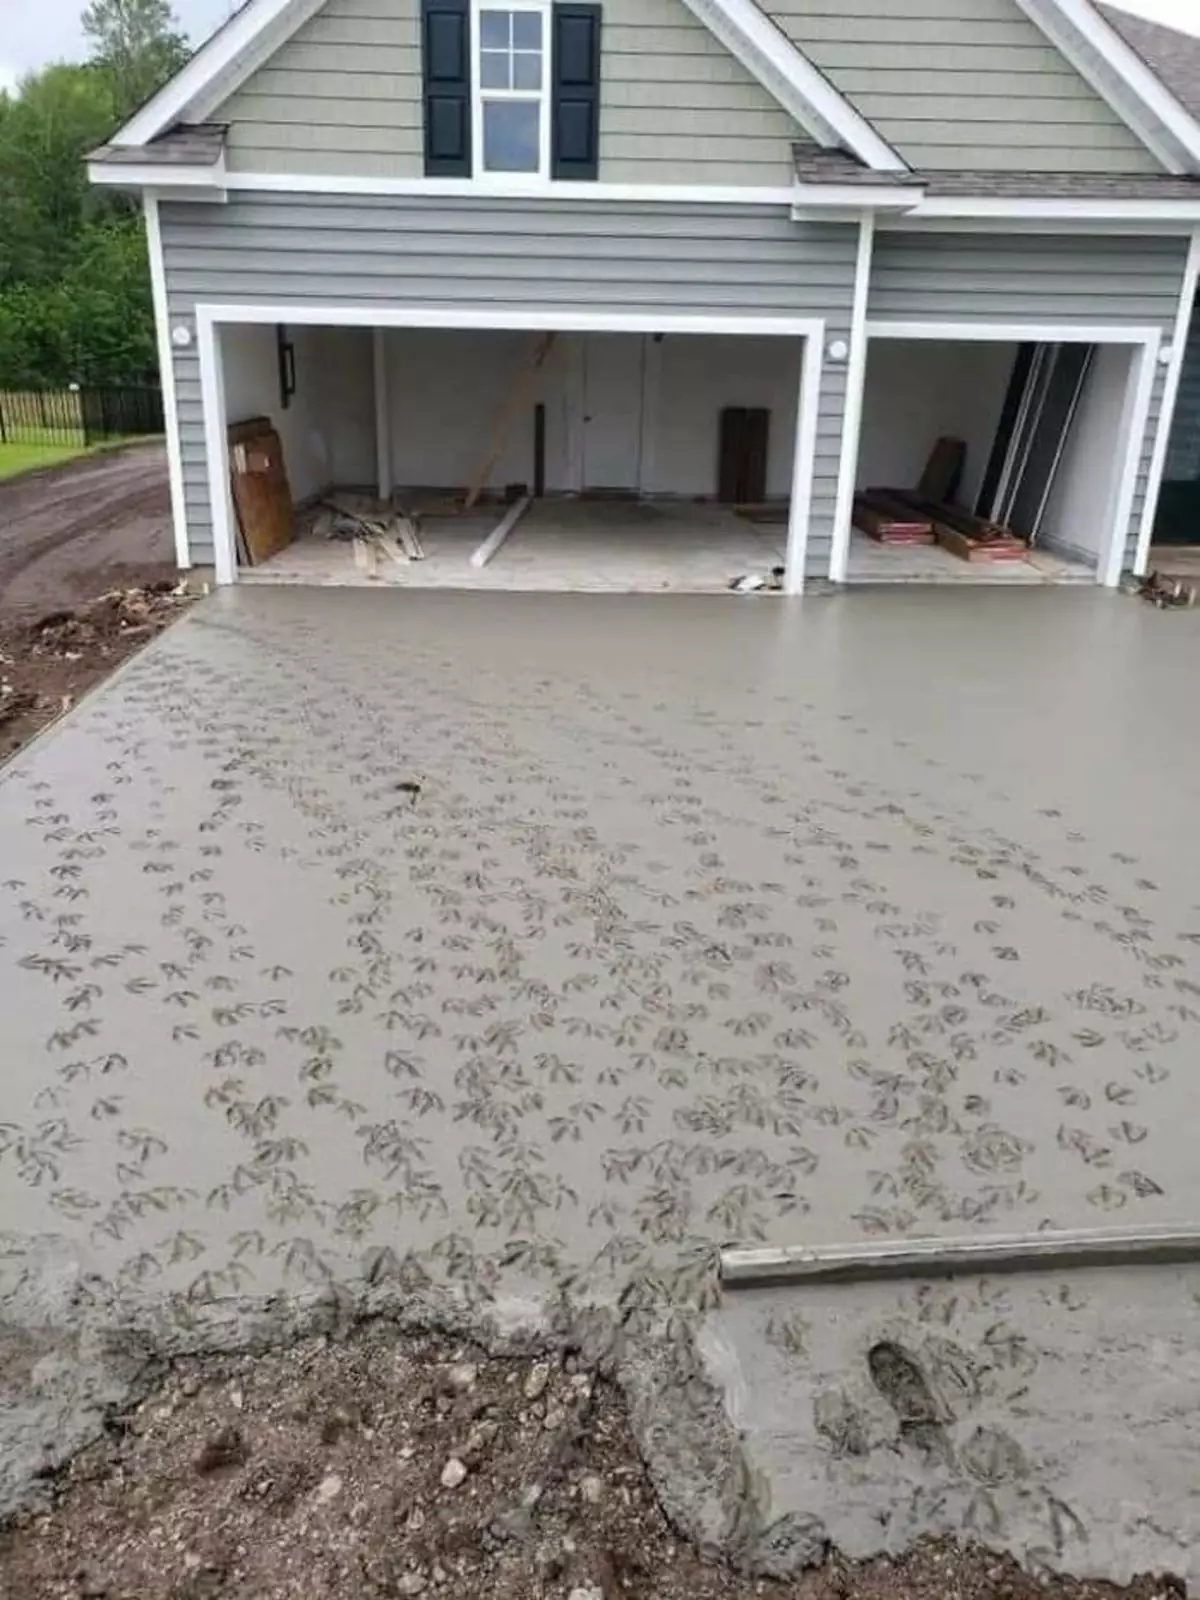 Когда залили бетон рядом с домом у пруда с утками.